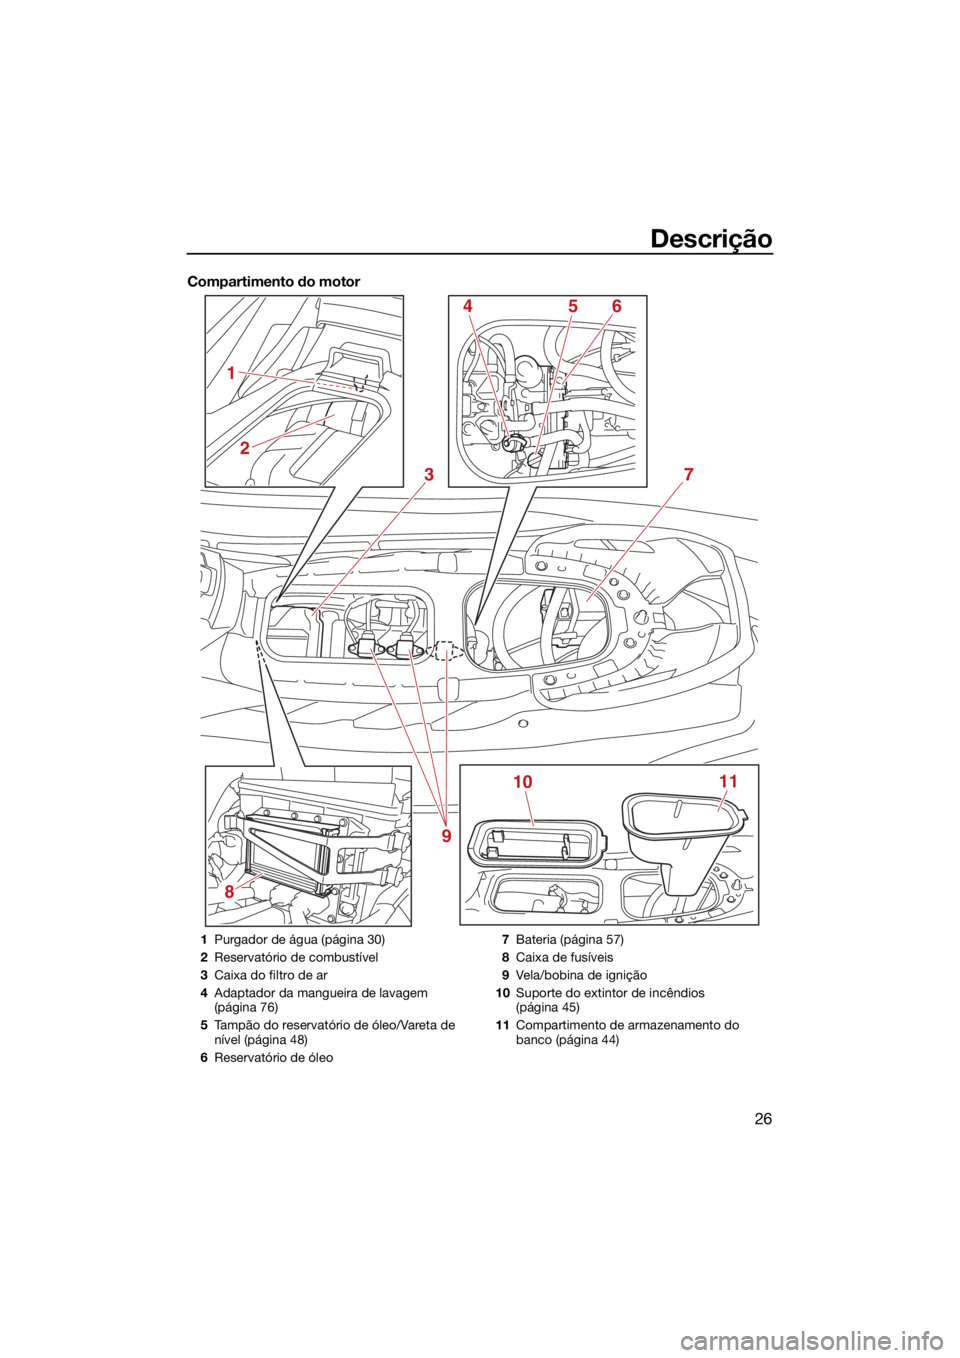 YAMAHA EXR 2021  Manual de utilização (in Portuguese) Descrição
26
Compartimento do motor
8
3
1011
4
2
1
56
7
9
1 Purgador de água (página 30)
2 Reservatório de combustível
3 Caixa do filtro de ar
4 Adaptador da mangueira de lavagem 
(página 76)
5